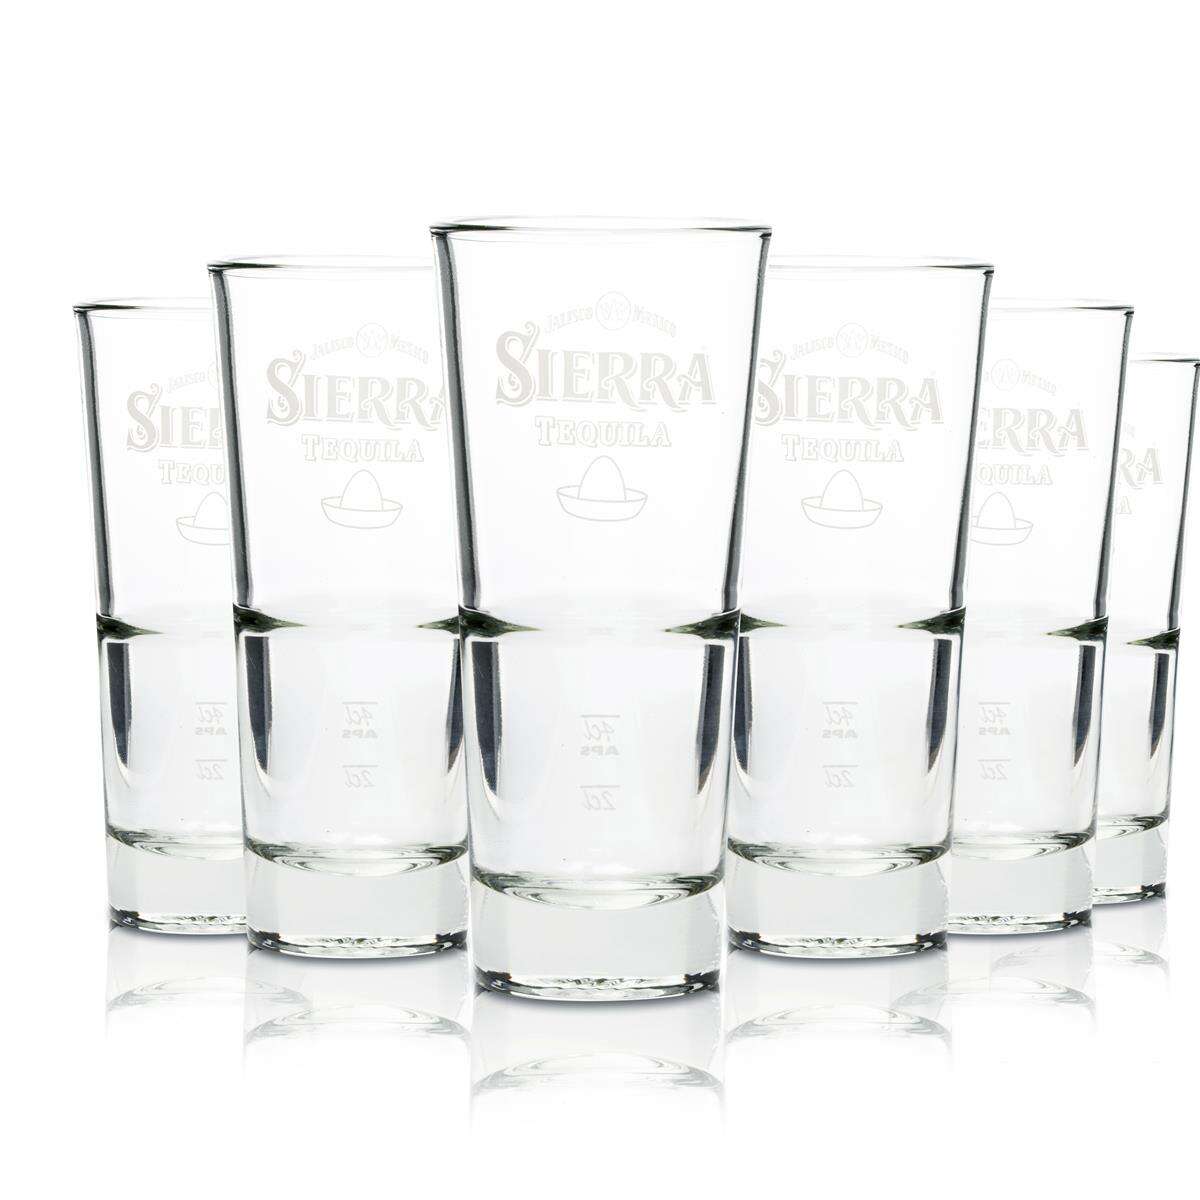 6 x Sierra Tequila Glas Gläser Longdrink Stapelbar Gastro Bar Deko NEU 